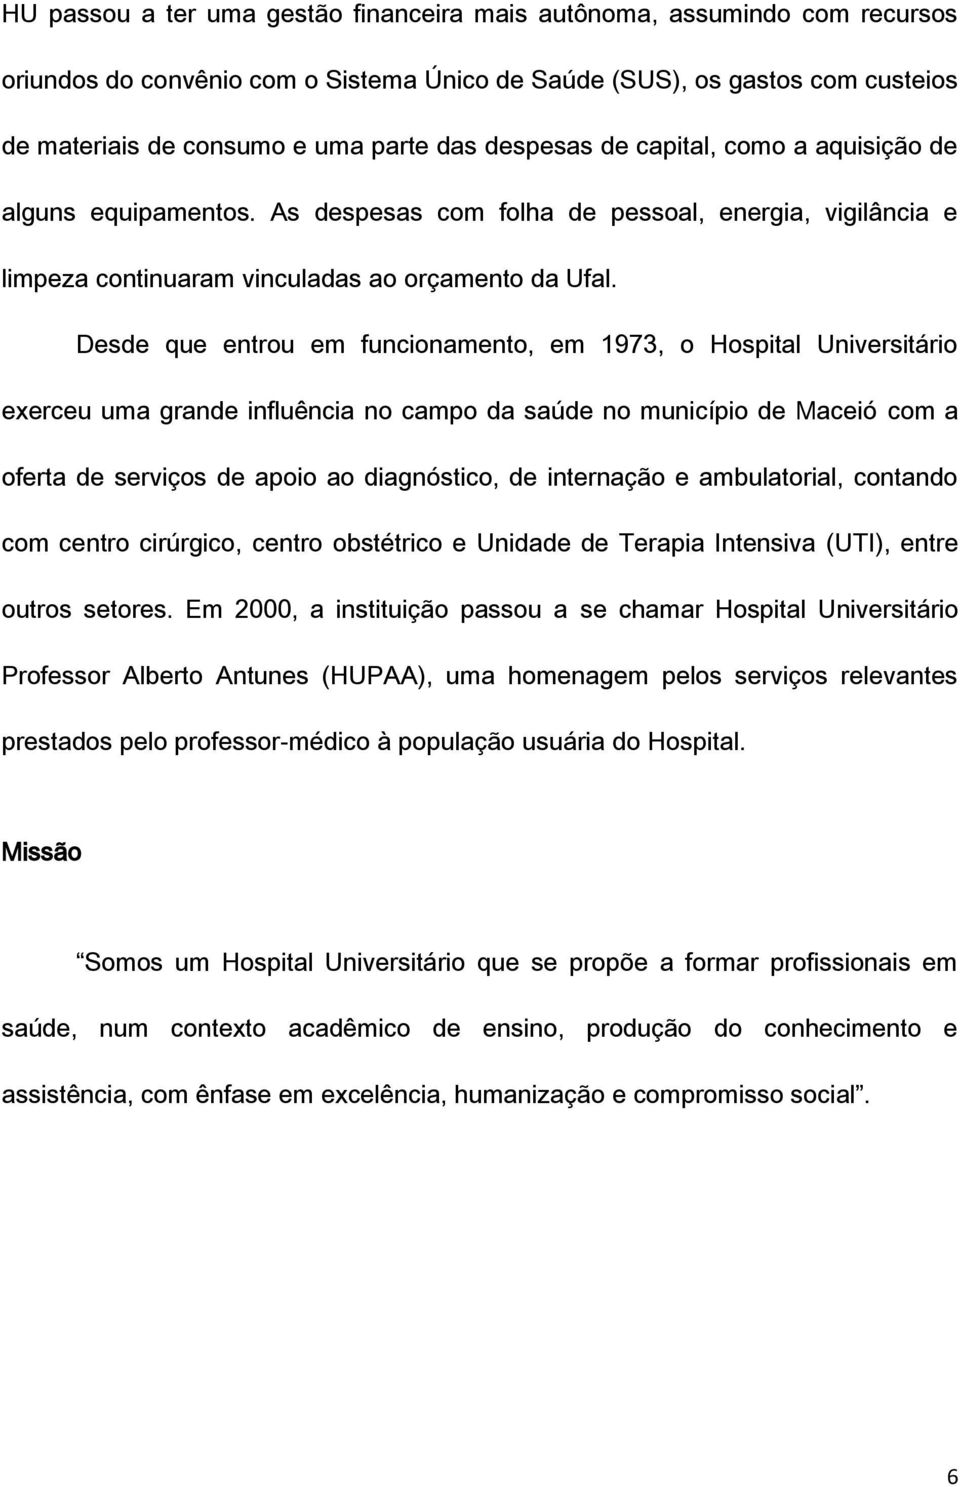 Desde que entrou em funcionamento, em 1973, o Hospital Universitário exerceu uma grande influência no campo da saúde no município de Maceió com a oferta de serviços de apoio ao diagnóstico, de